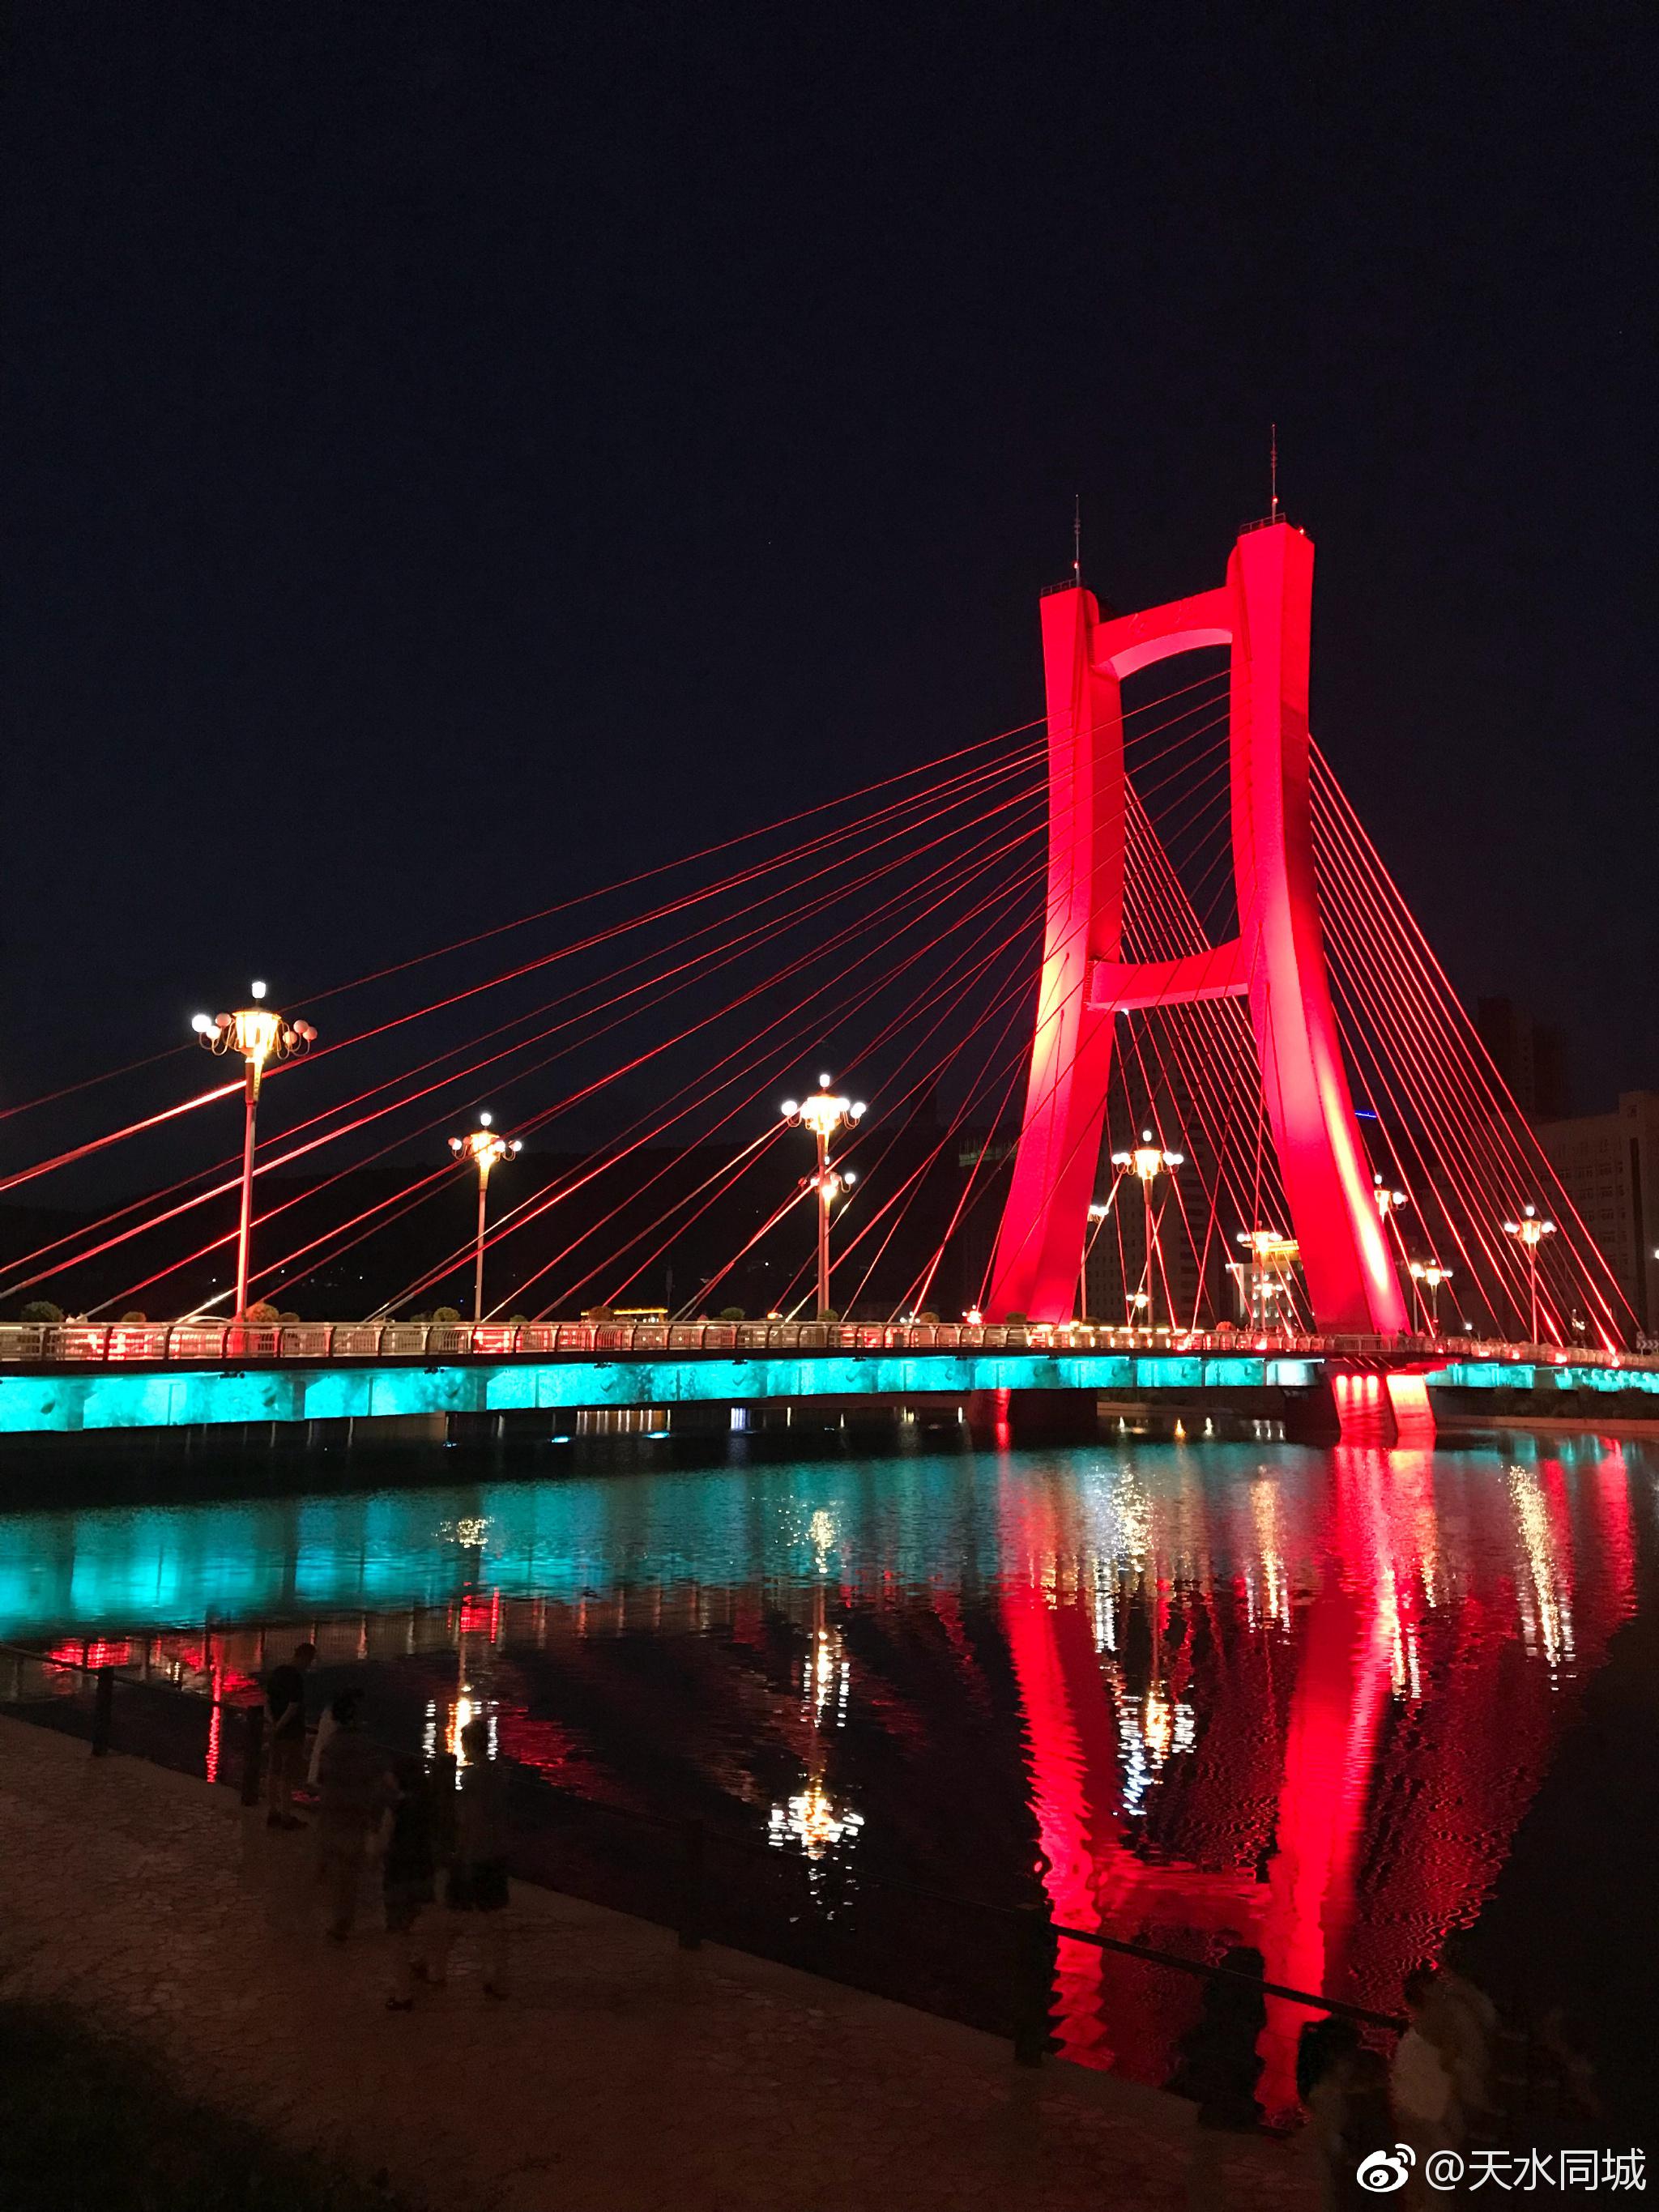 天水红桥夜景,特别美.